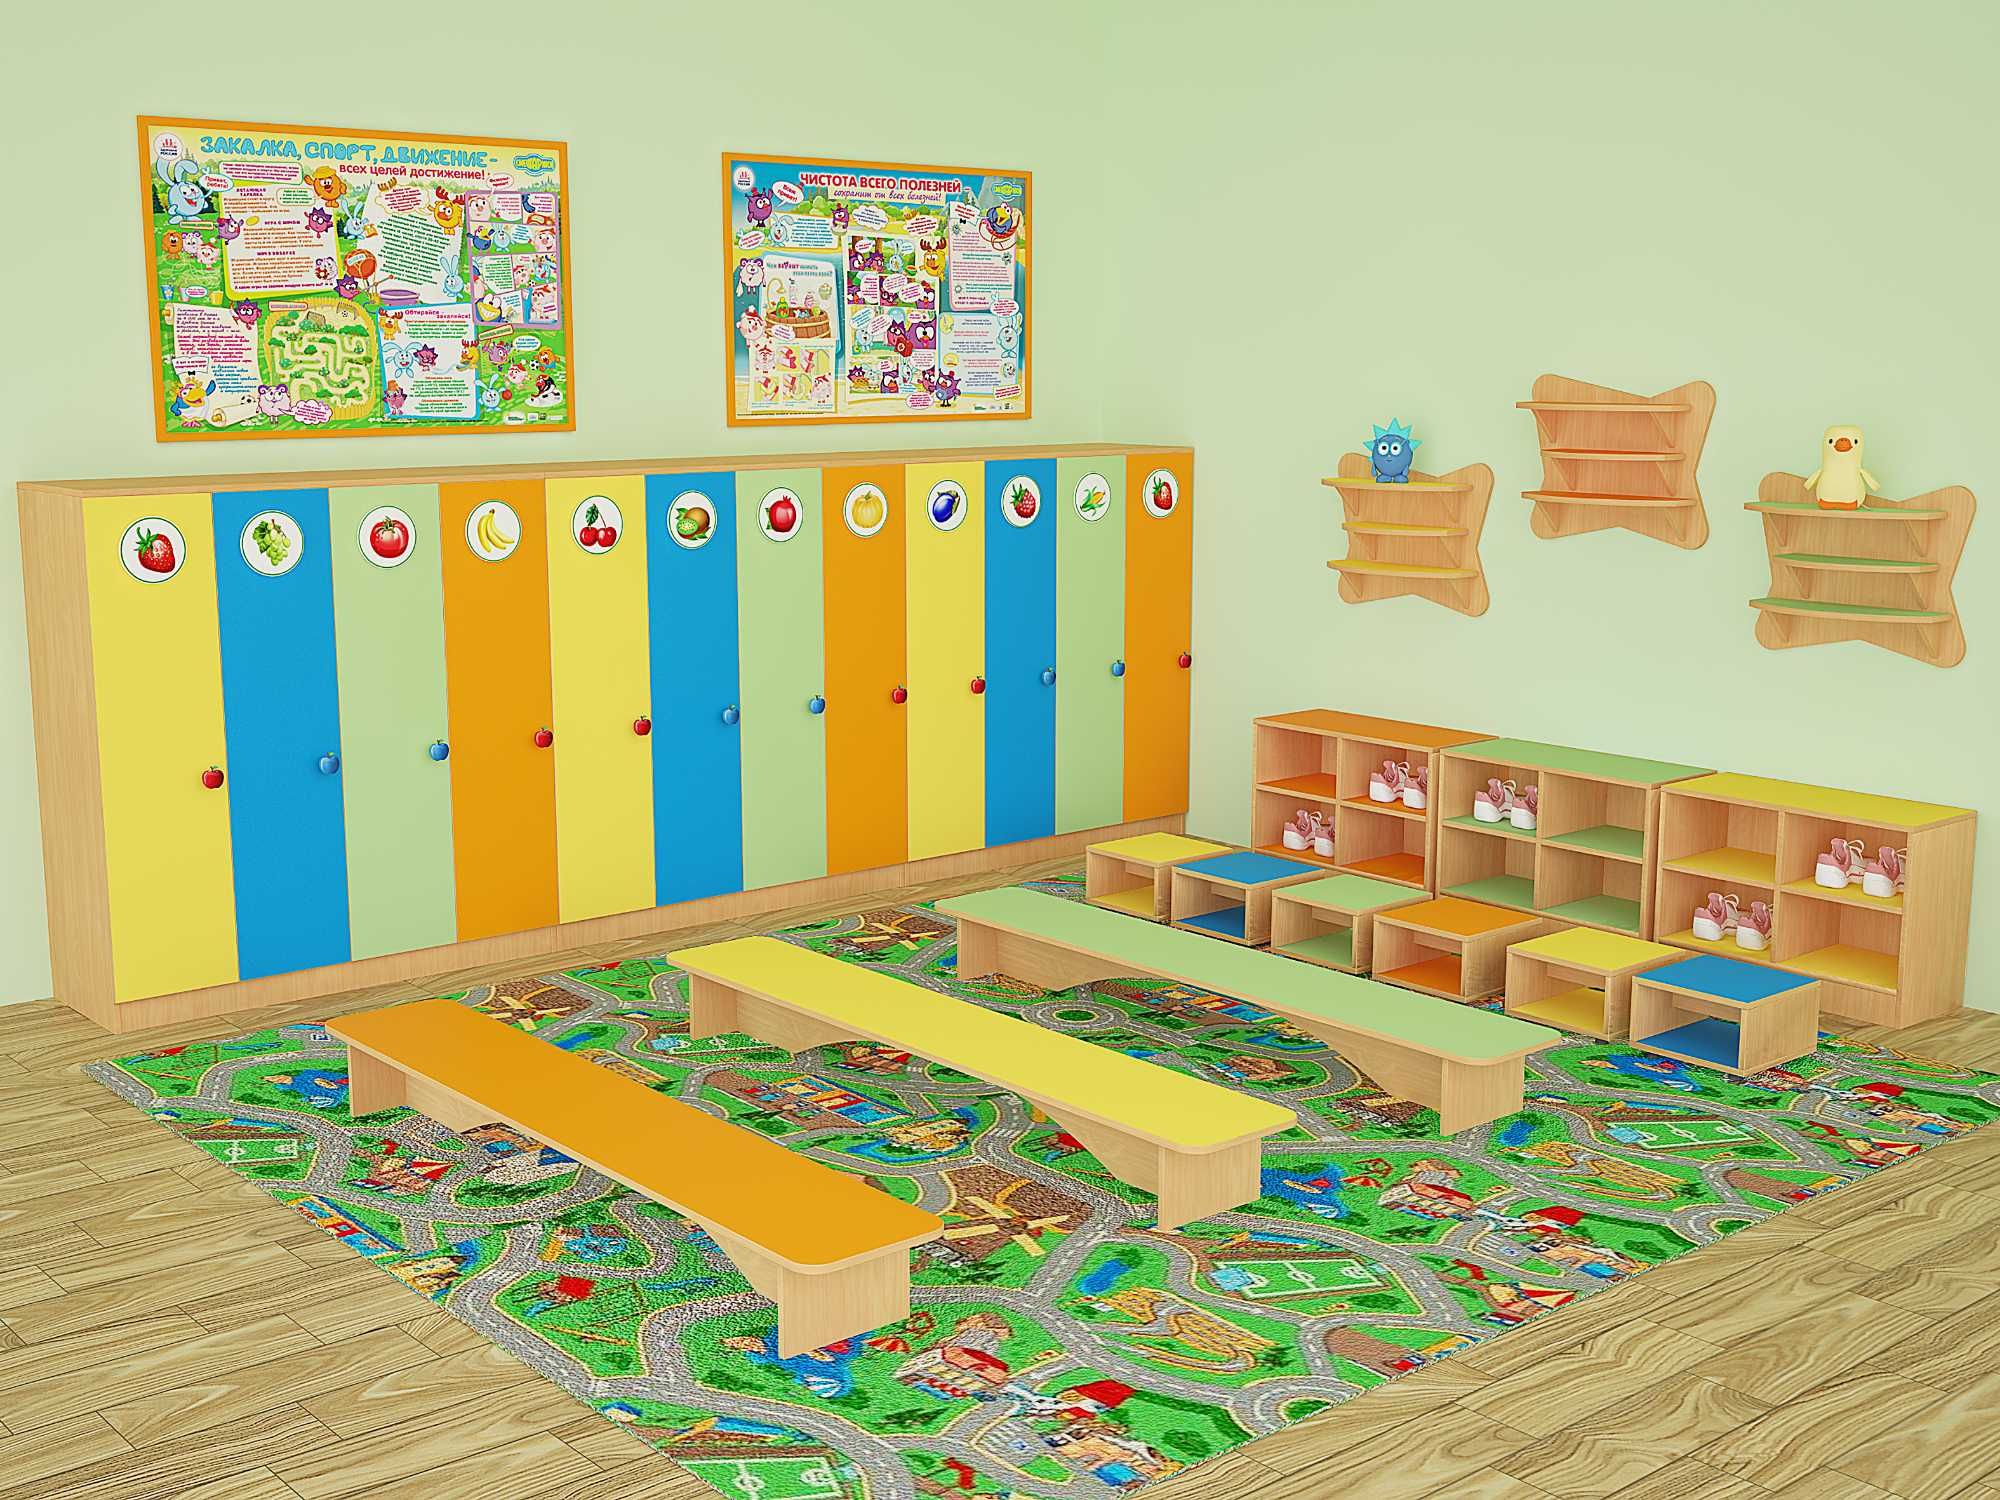 Мебель для детских садов и дошкольных центров от производителя!